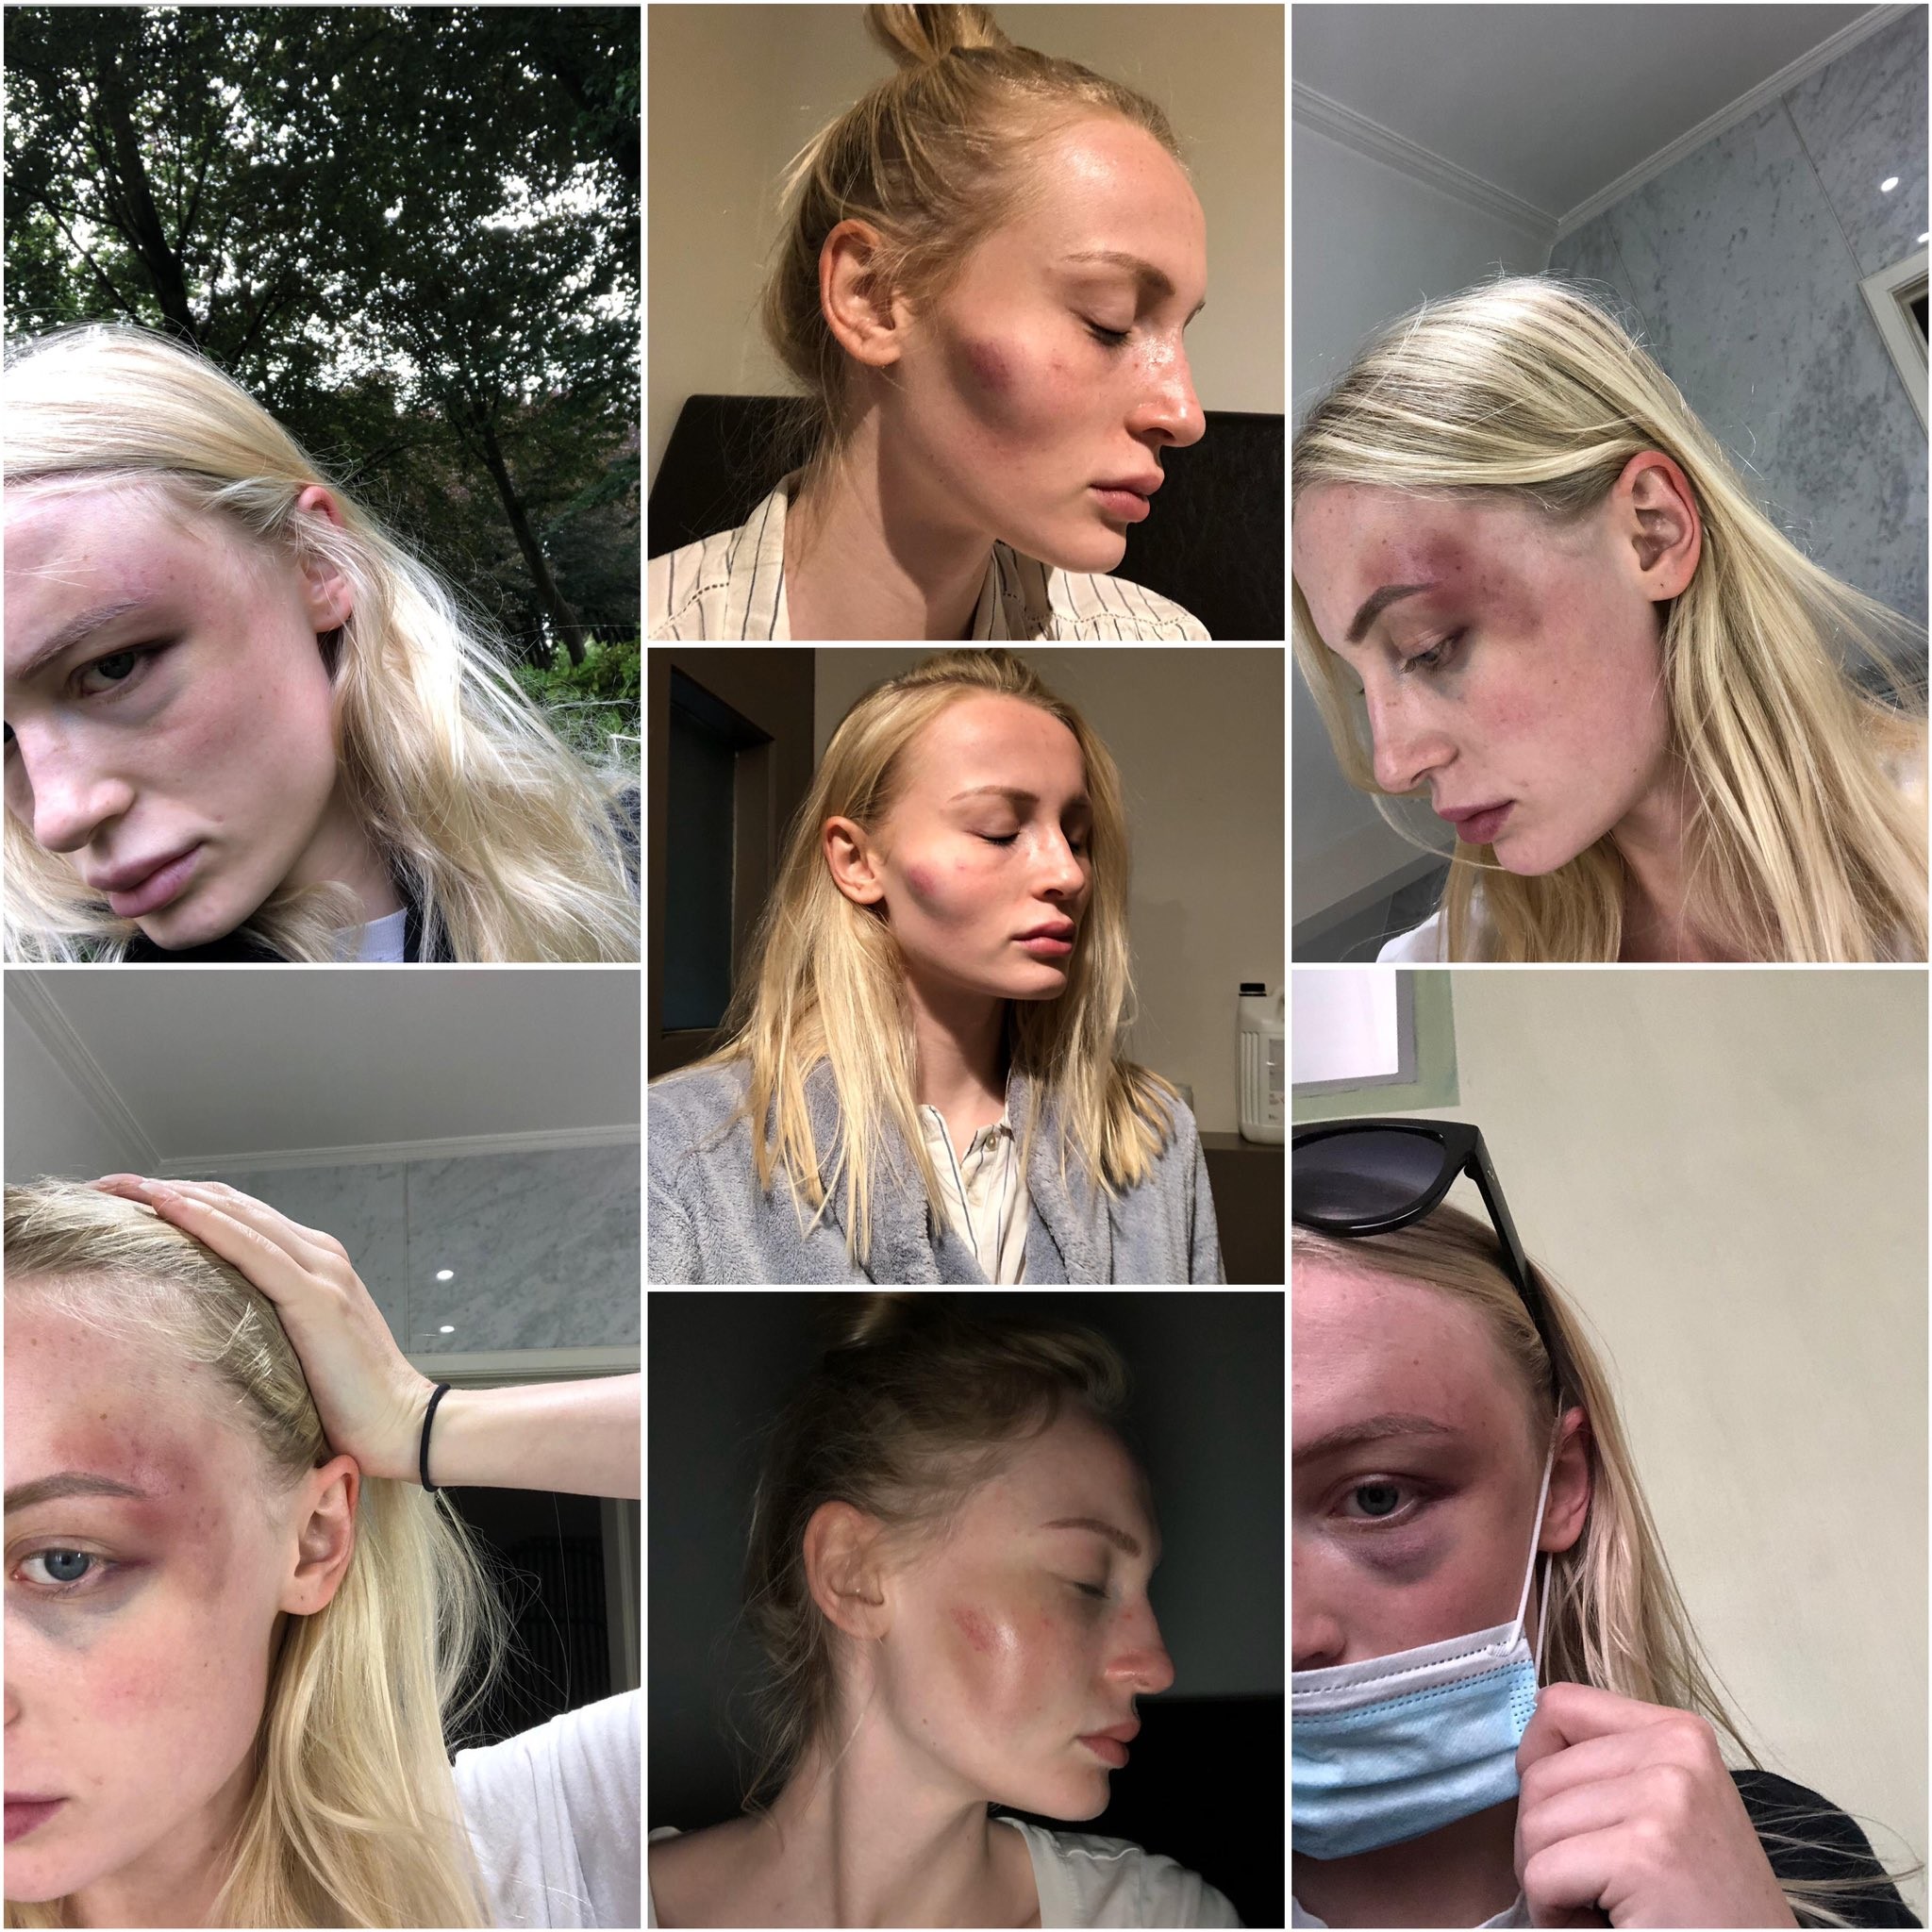 As fotos compartilhadas pela modelo belga Anthonia Rochus mostrando as lesões causadas pelas agressões cometidas por seu ex-namorado (Foto: Twitter)